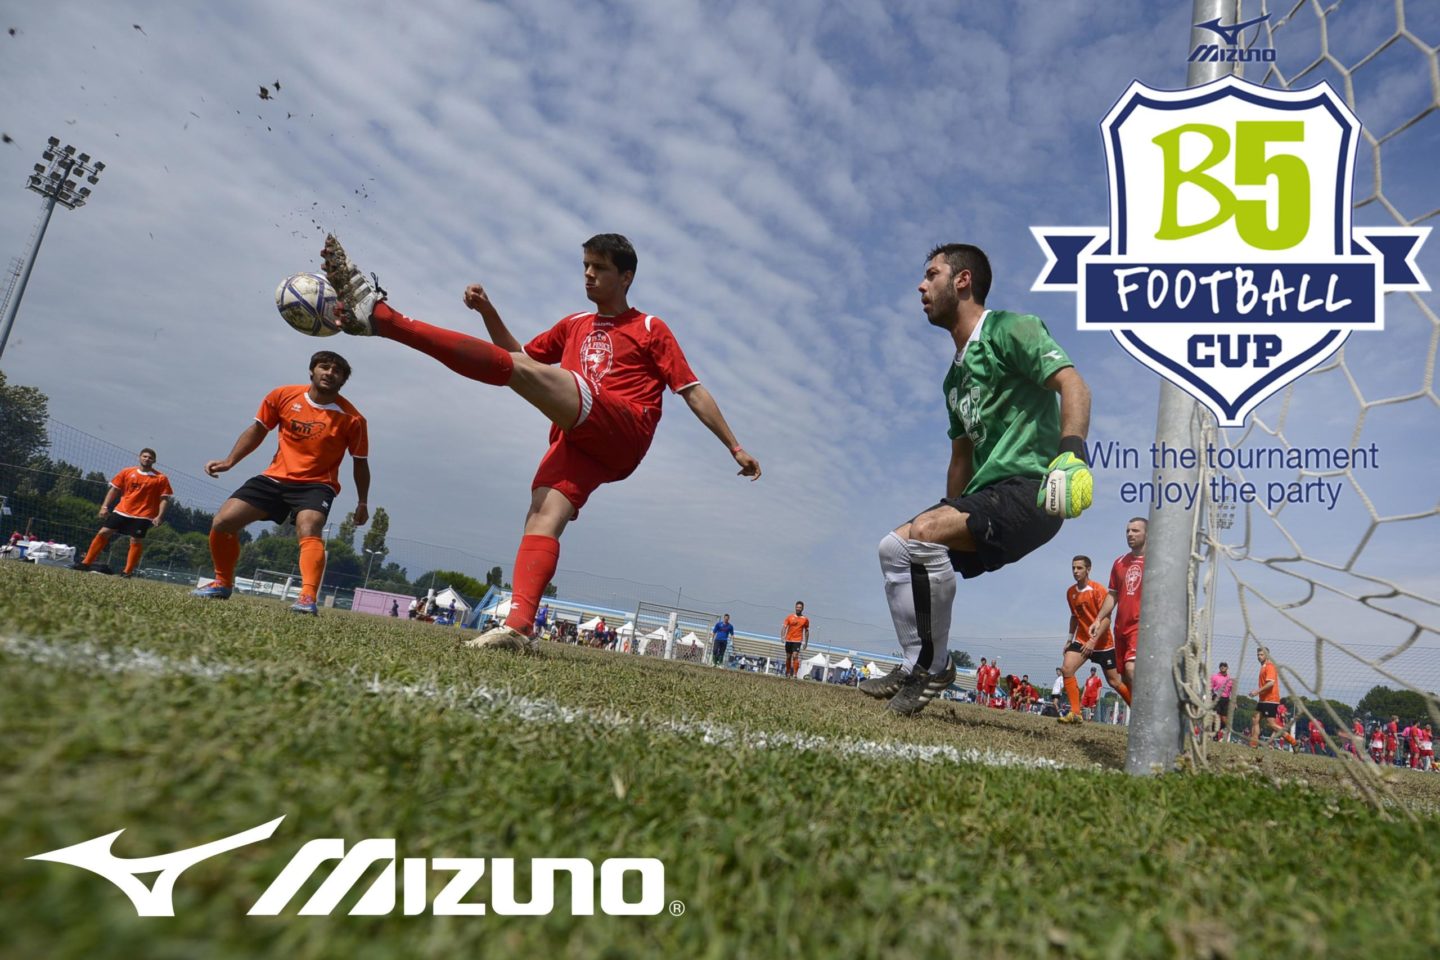 Mizuno B5 Football Cup, il 13 e 14 giugno a Bibione. Clicca qui e partecipa anche tu!